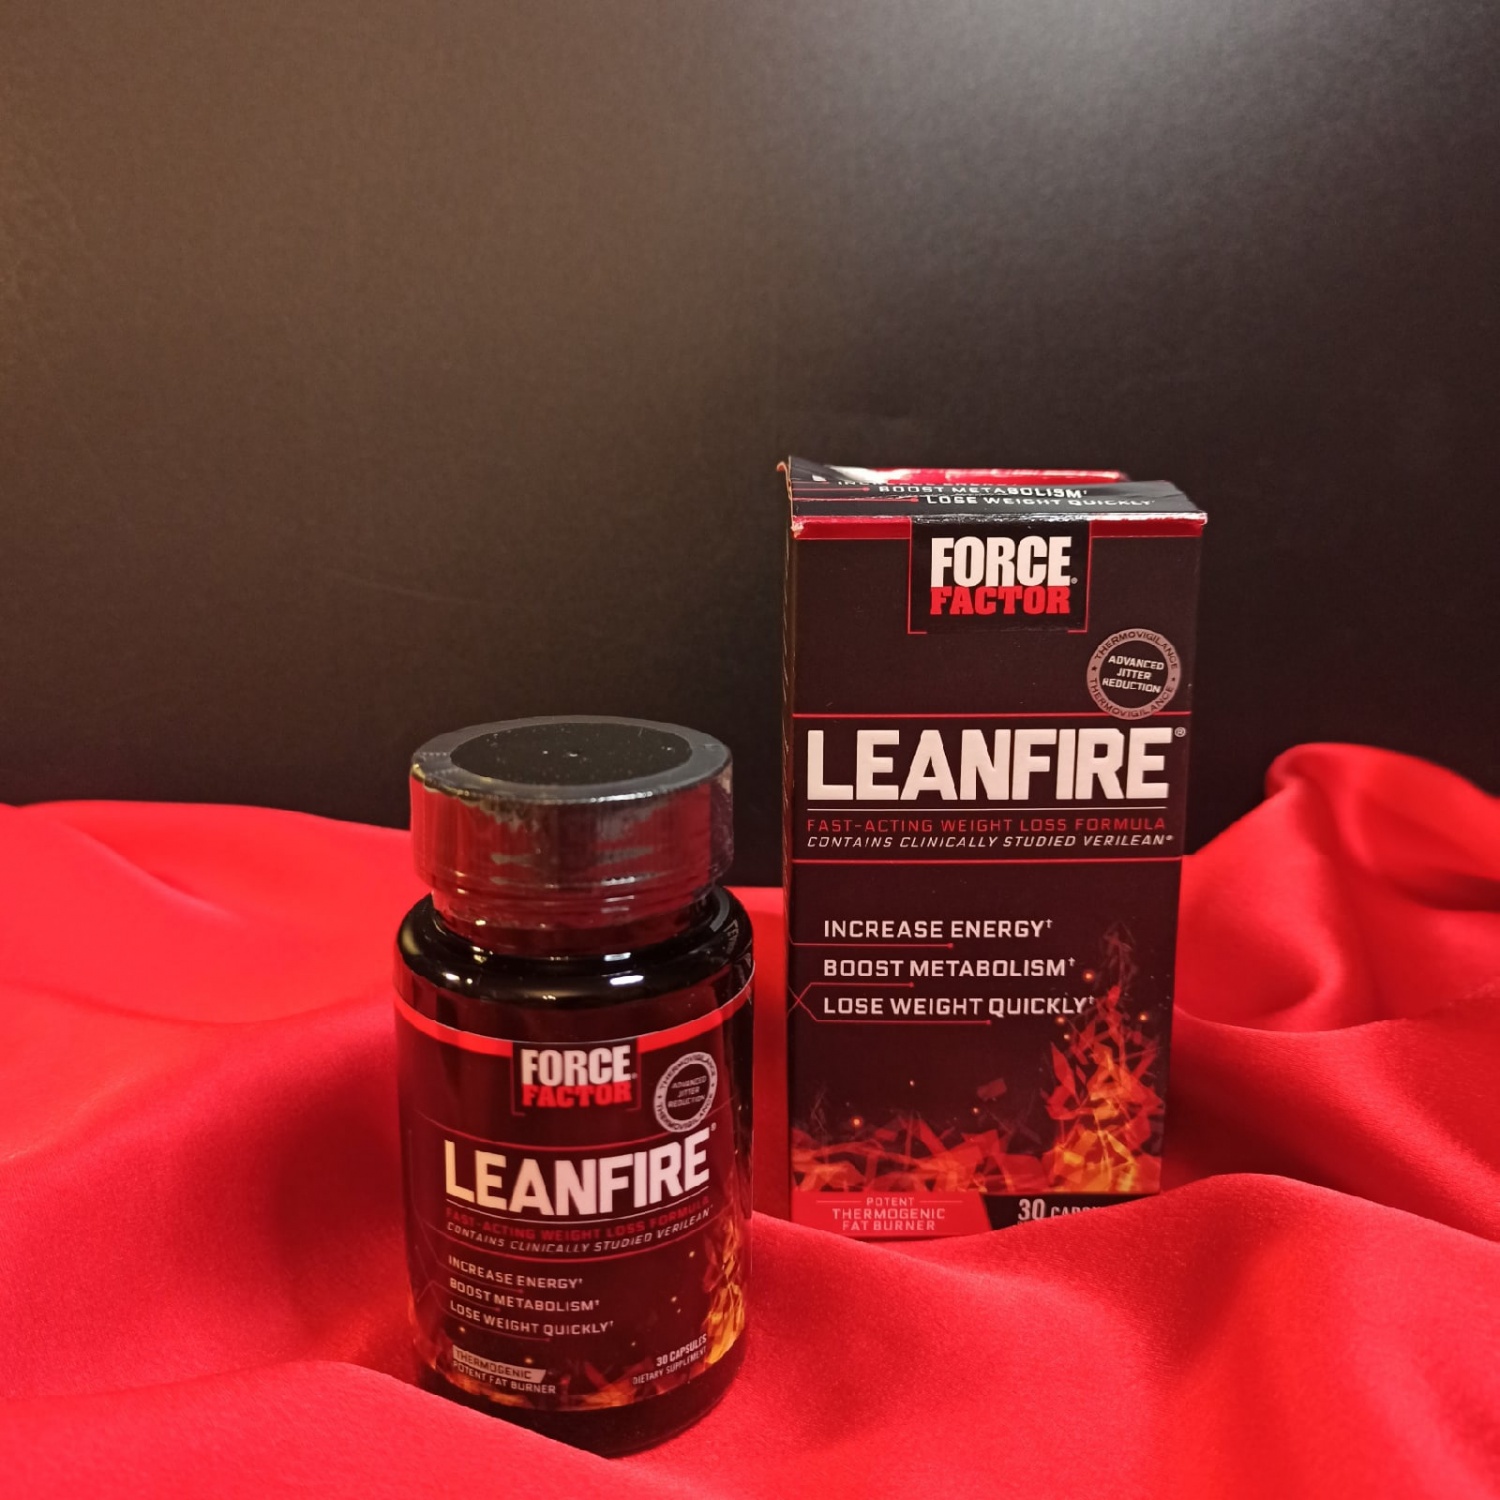 БАД Force Factor LeanFire, средство для быстрого снижения веса фото